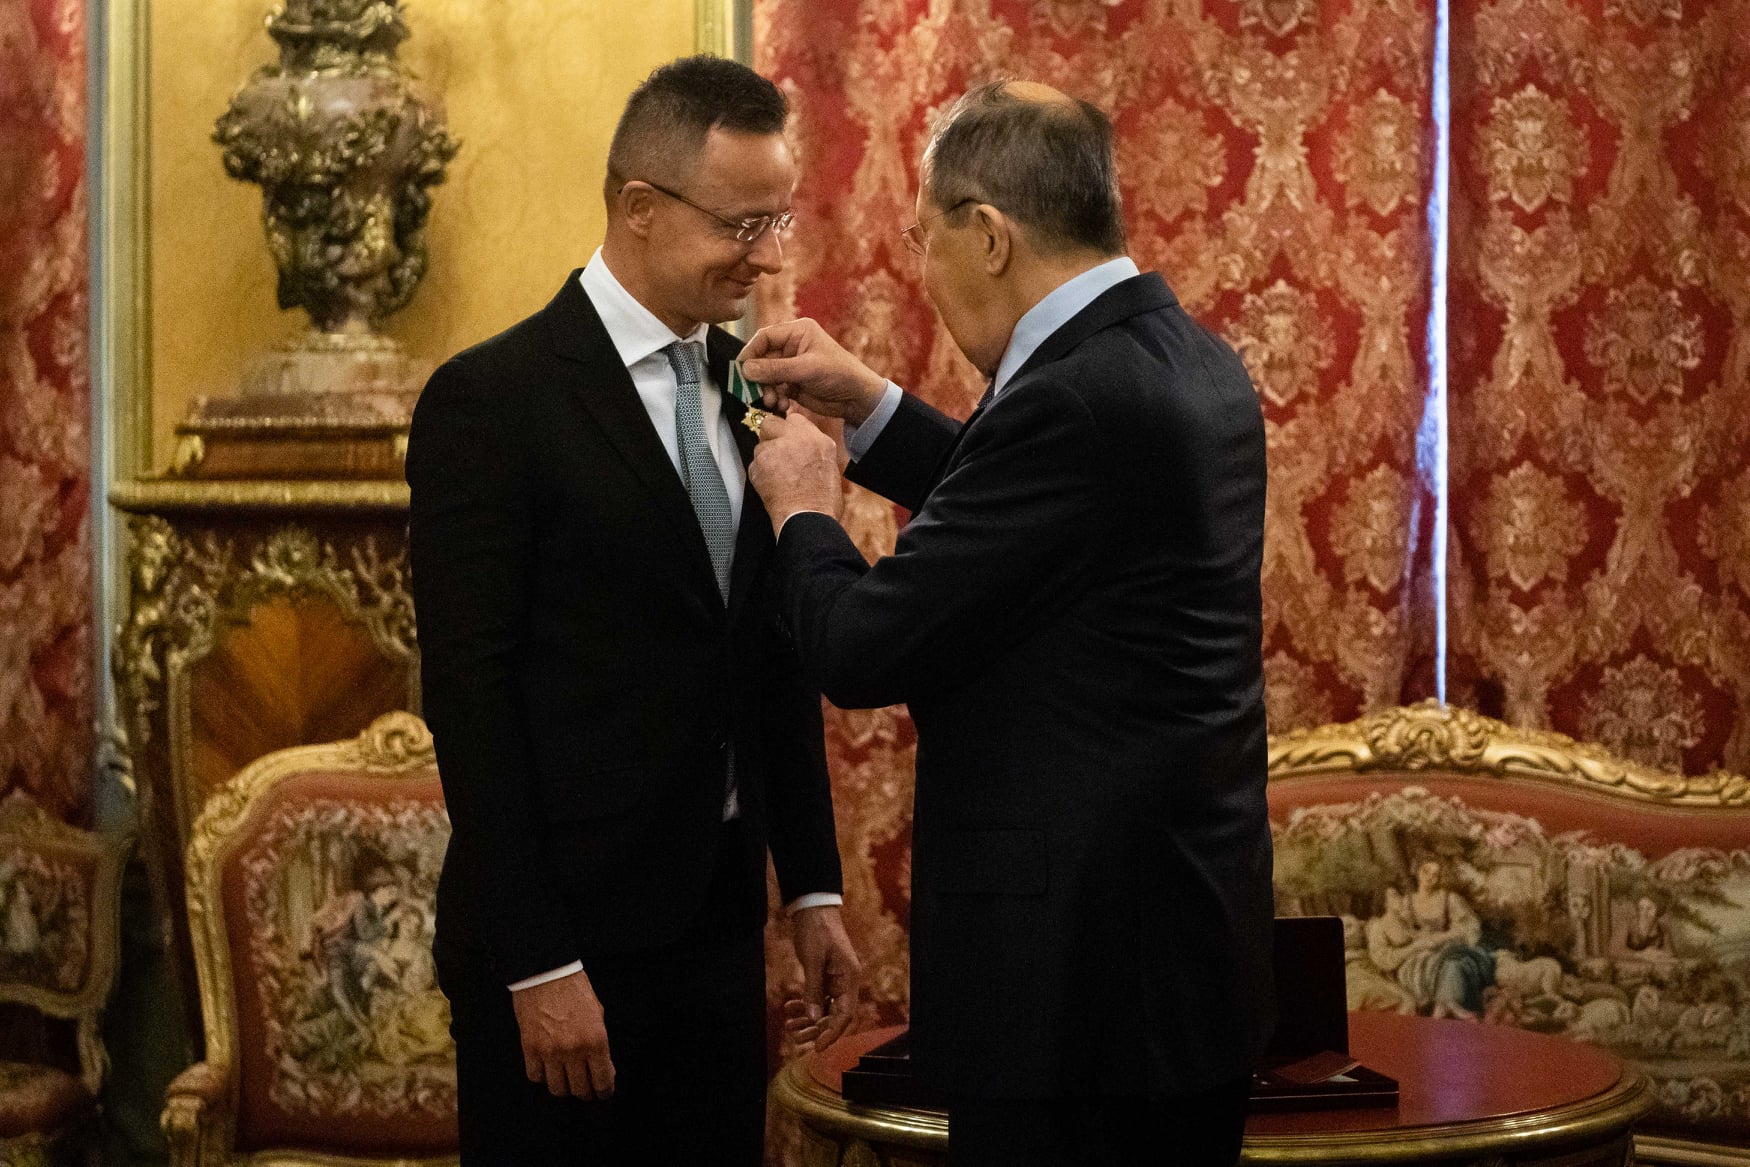 FM Szijjártó Receives Order of Friendship from Russian Counterpart